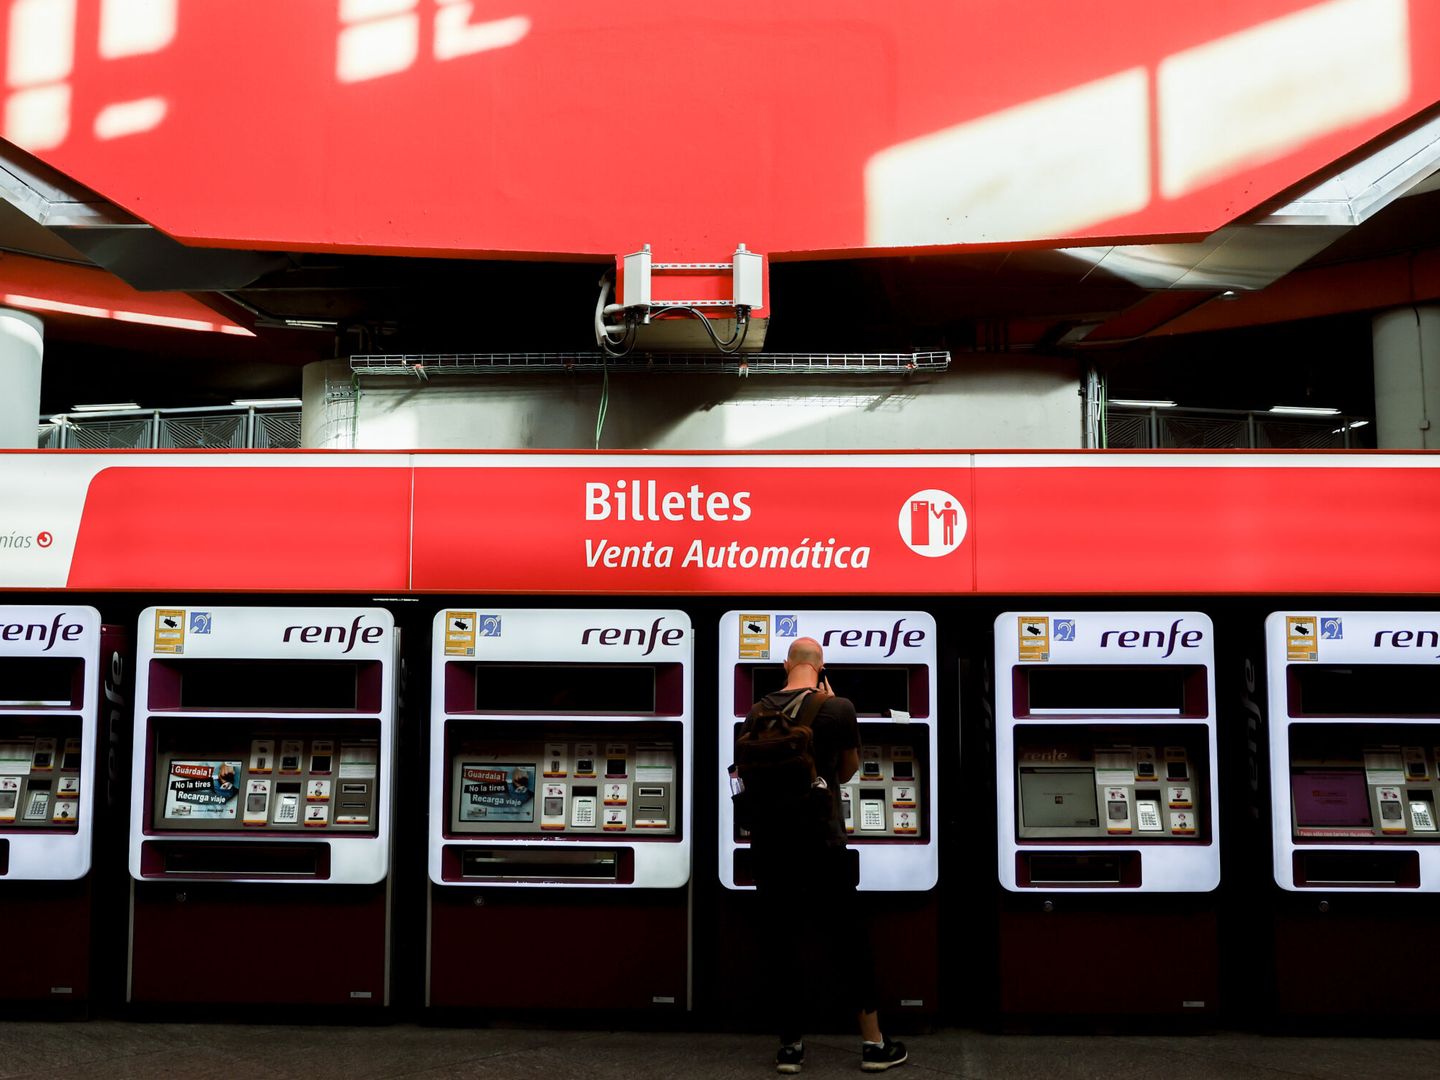 Viajeros gestionan la compra de sus abonos en máquinas expendedoras de billetes en una estación de Cercanías de Madrid. (EFE/Mariscal)